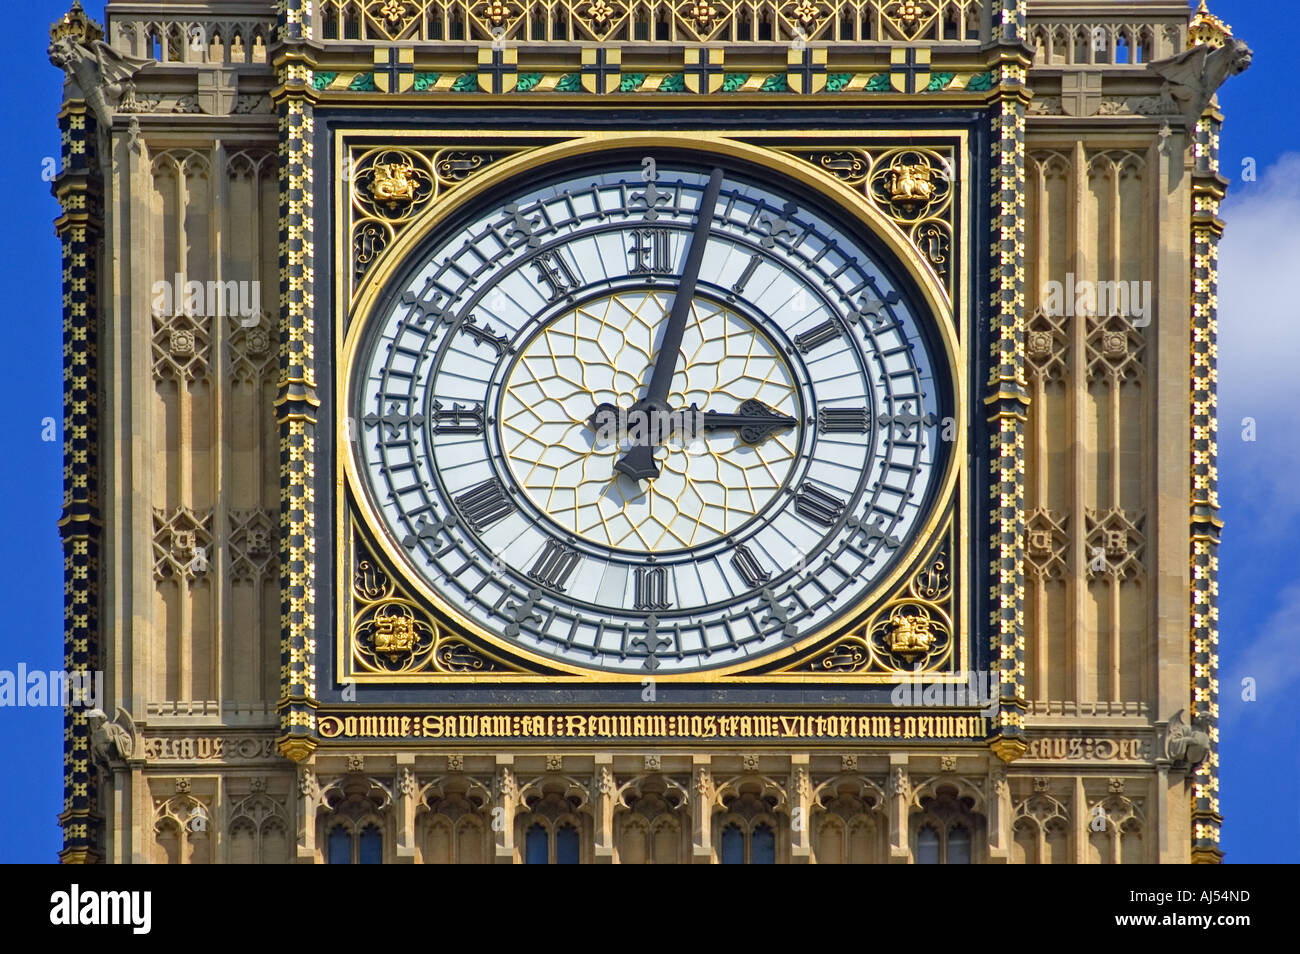 Londres, Angleterre, Royaume-Uni. La place du Parlement. Big Ben (St Stephen's Tower) Couleurs Banque D'Images